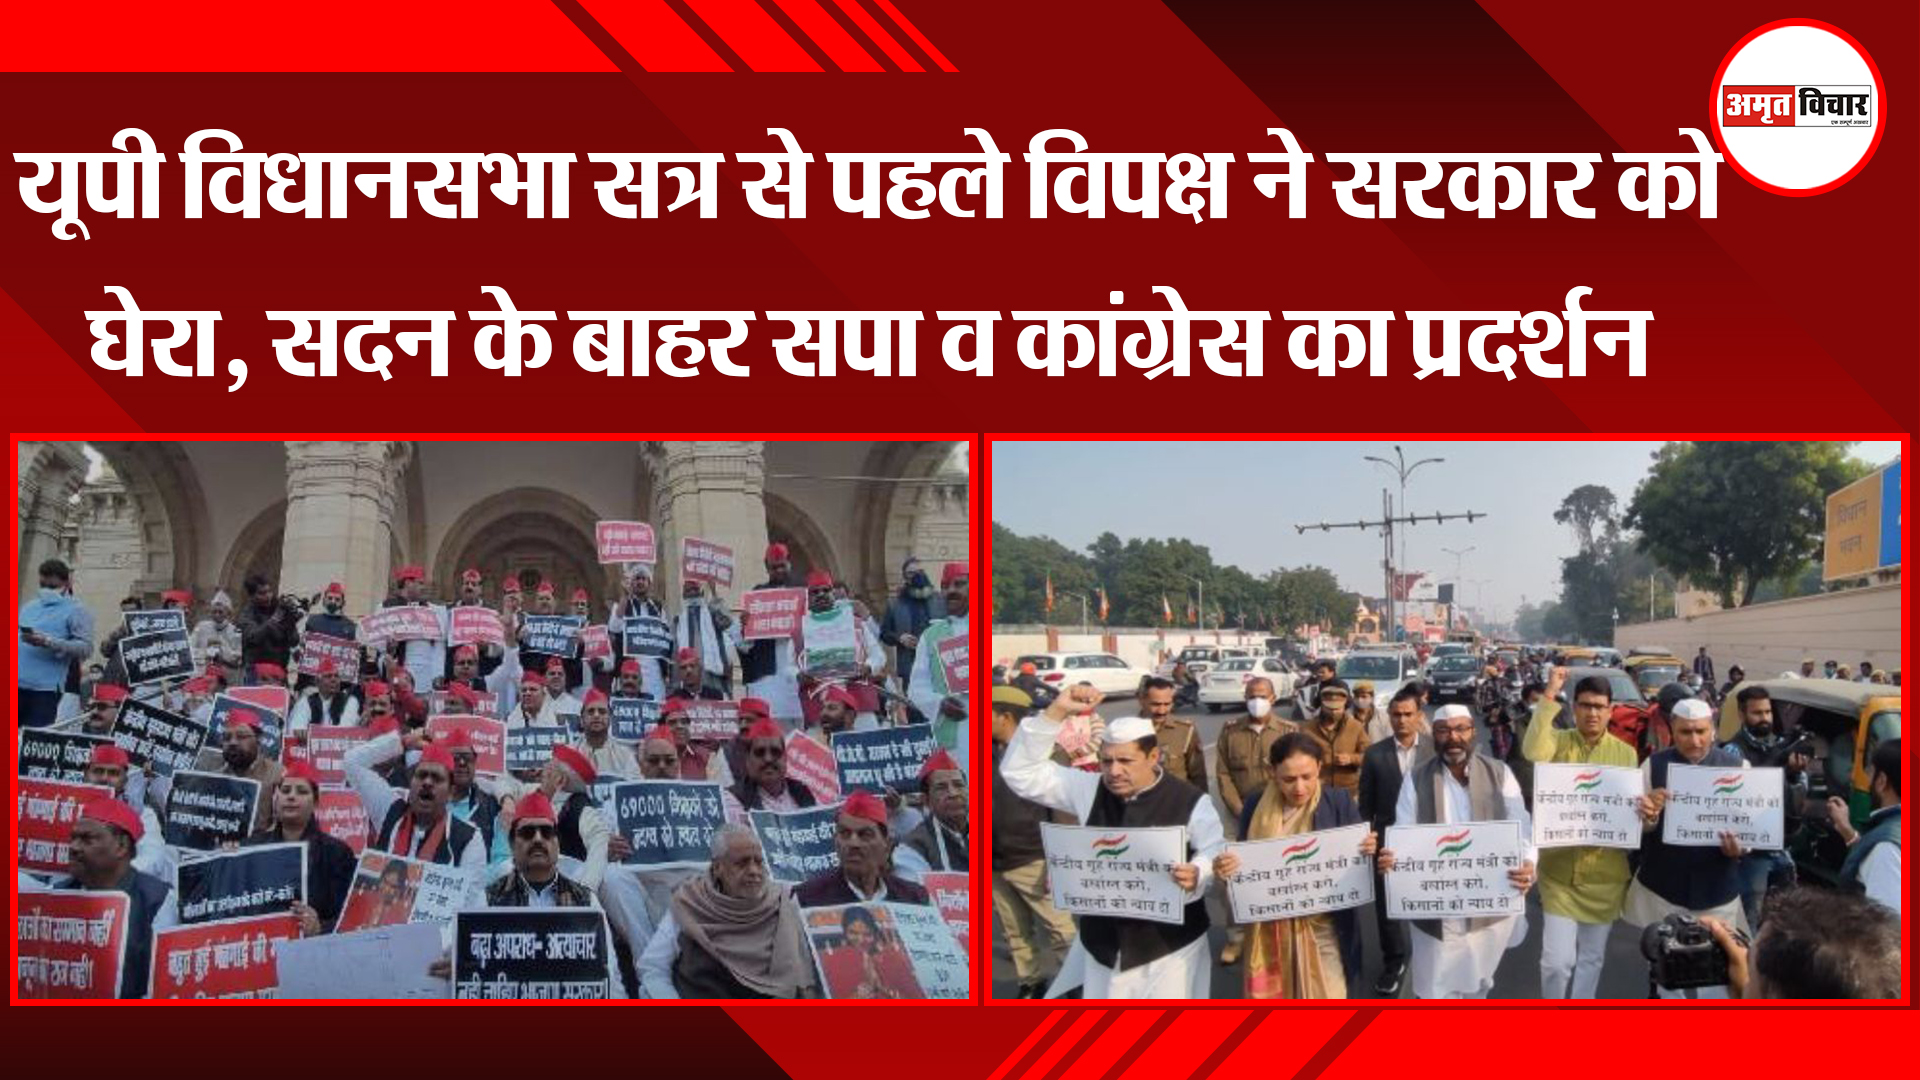 लखनऊ: यूपी विधानसभा सत्र विपक्ष सरकार को घेरा, सदन के बाहर सपा व कांग्रेस का प्रदर्शन